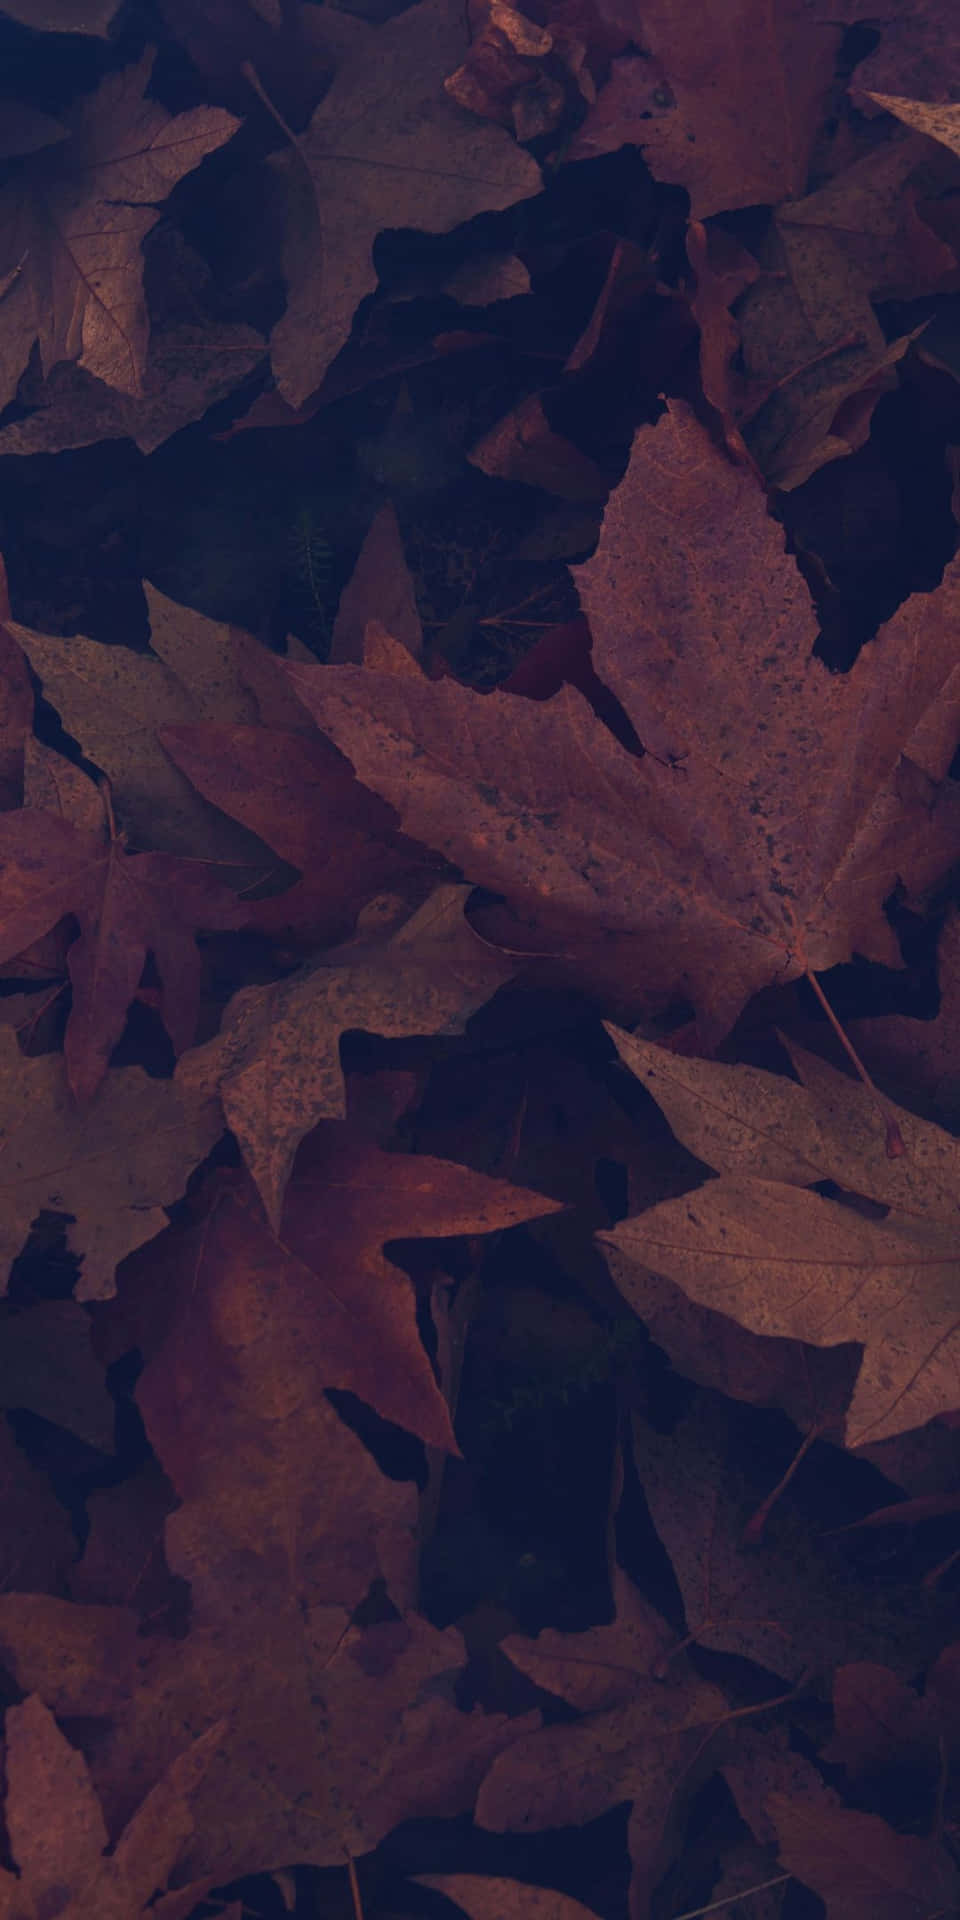 Kastanjeblade med bordeaux overlay til en mørk efterårsagtig følelse. Wallpaper